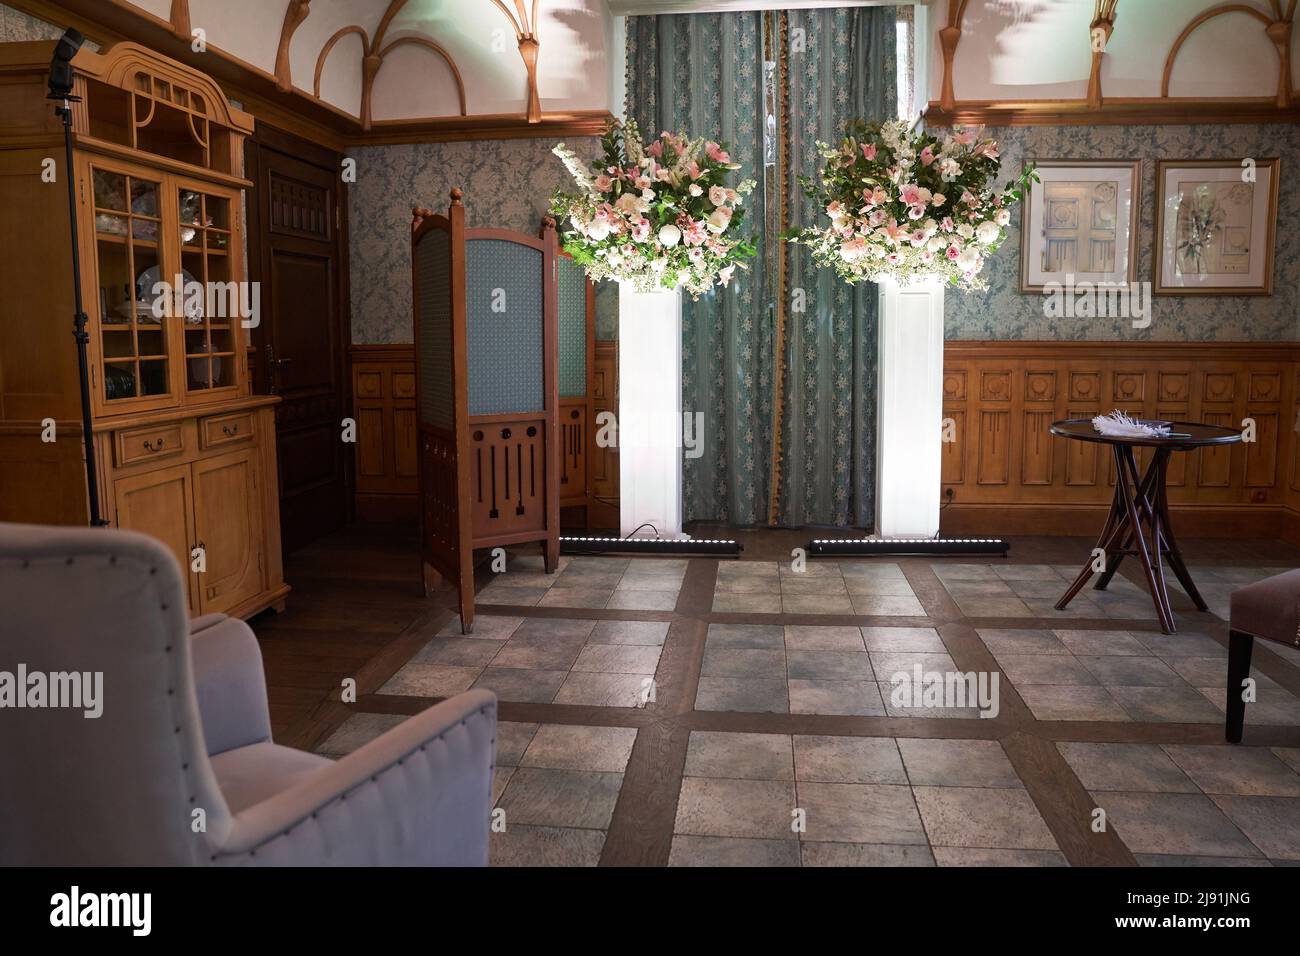 Schöner Vintage-Saal für eine Hochzeitszeremonie.Elegantes Interieur-Design mit Blumen im Vintage-Stil. Hochwertige Fotos Stockfoto